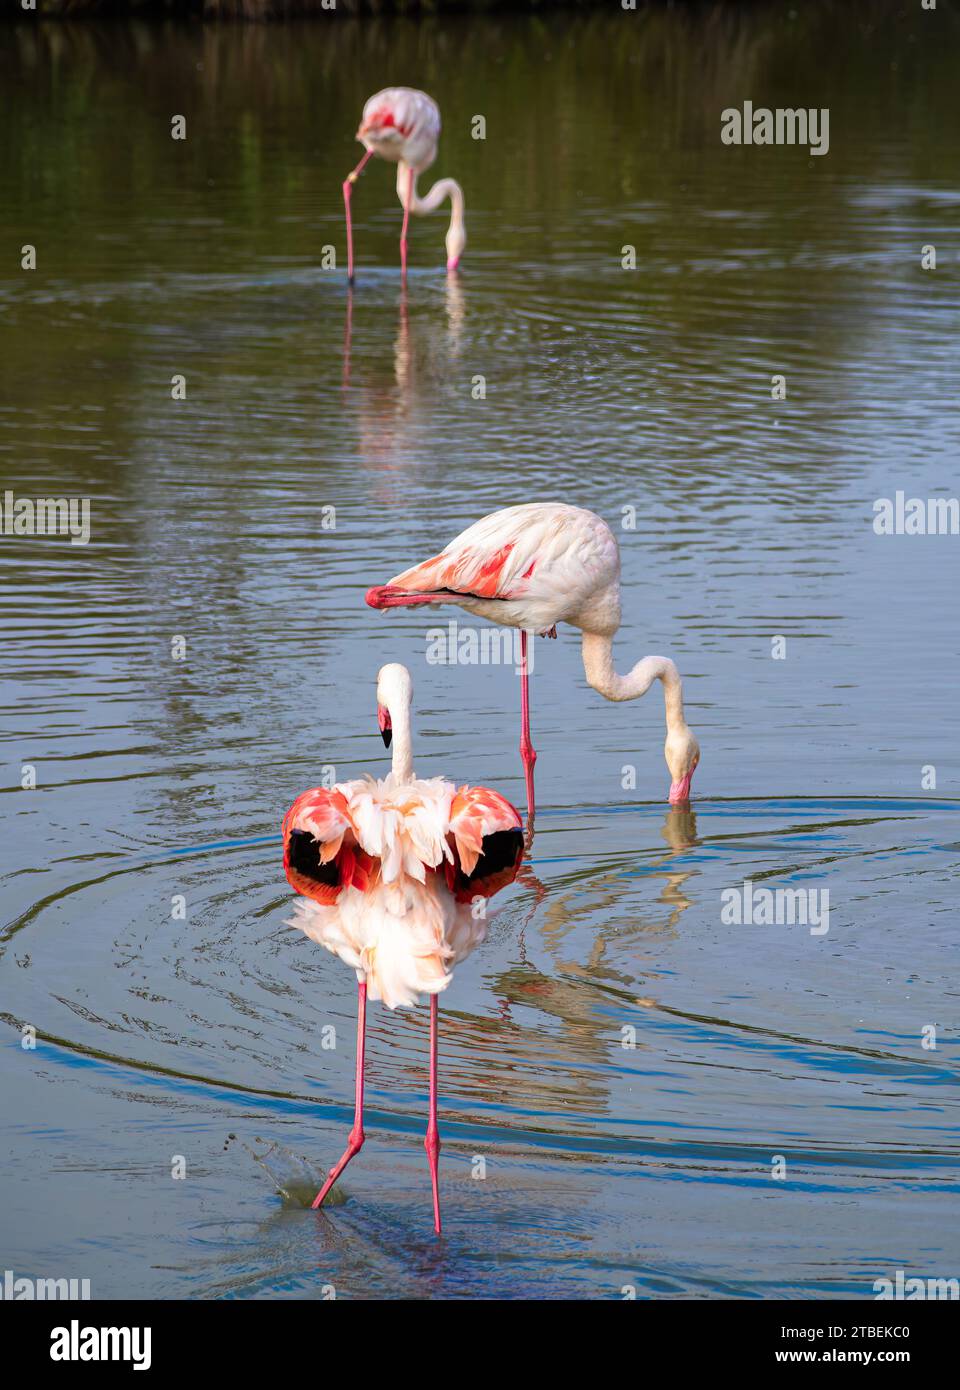 Grands Flamingos dans l'eau dans l'habitat naturel de Camargue, France. Scène de la faune de la nature. Banque D'Images